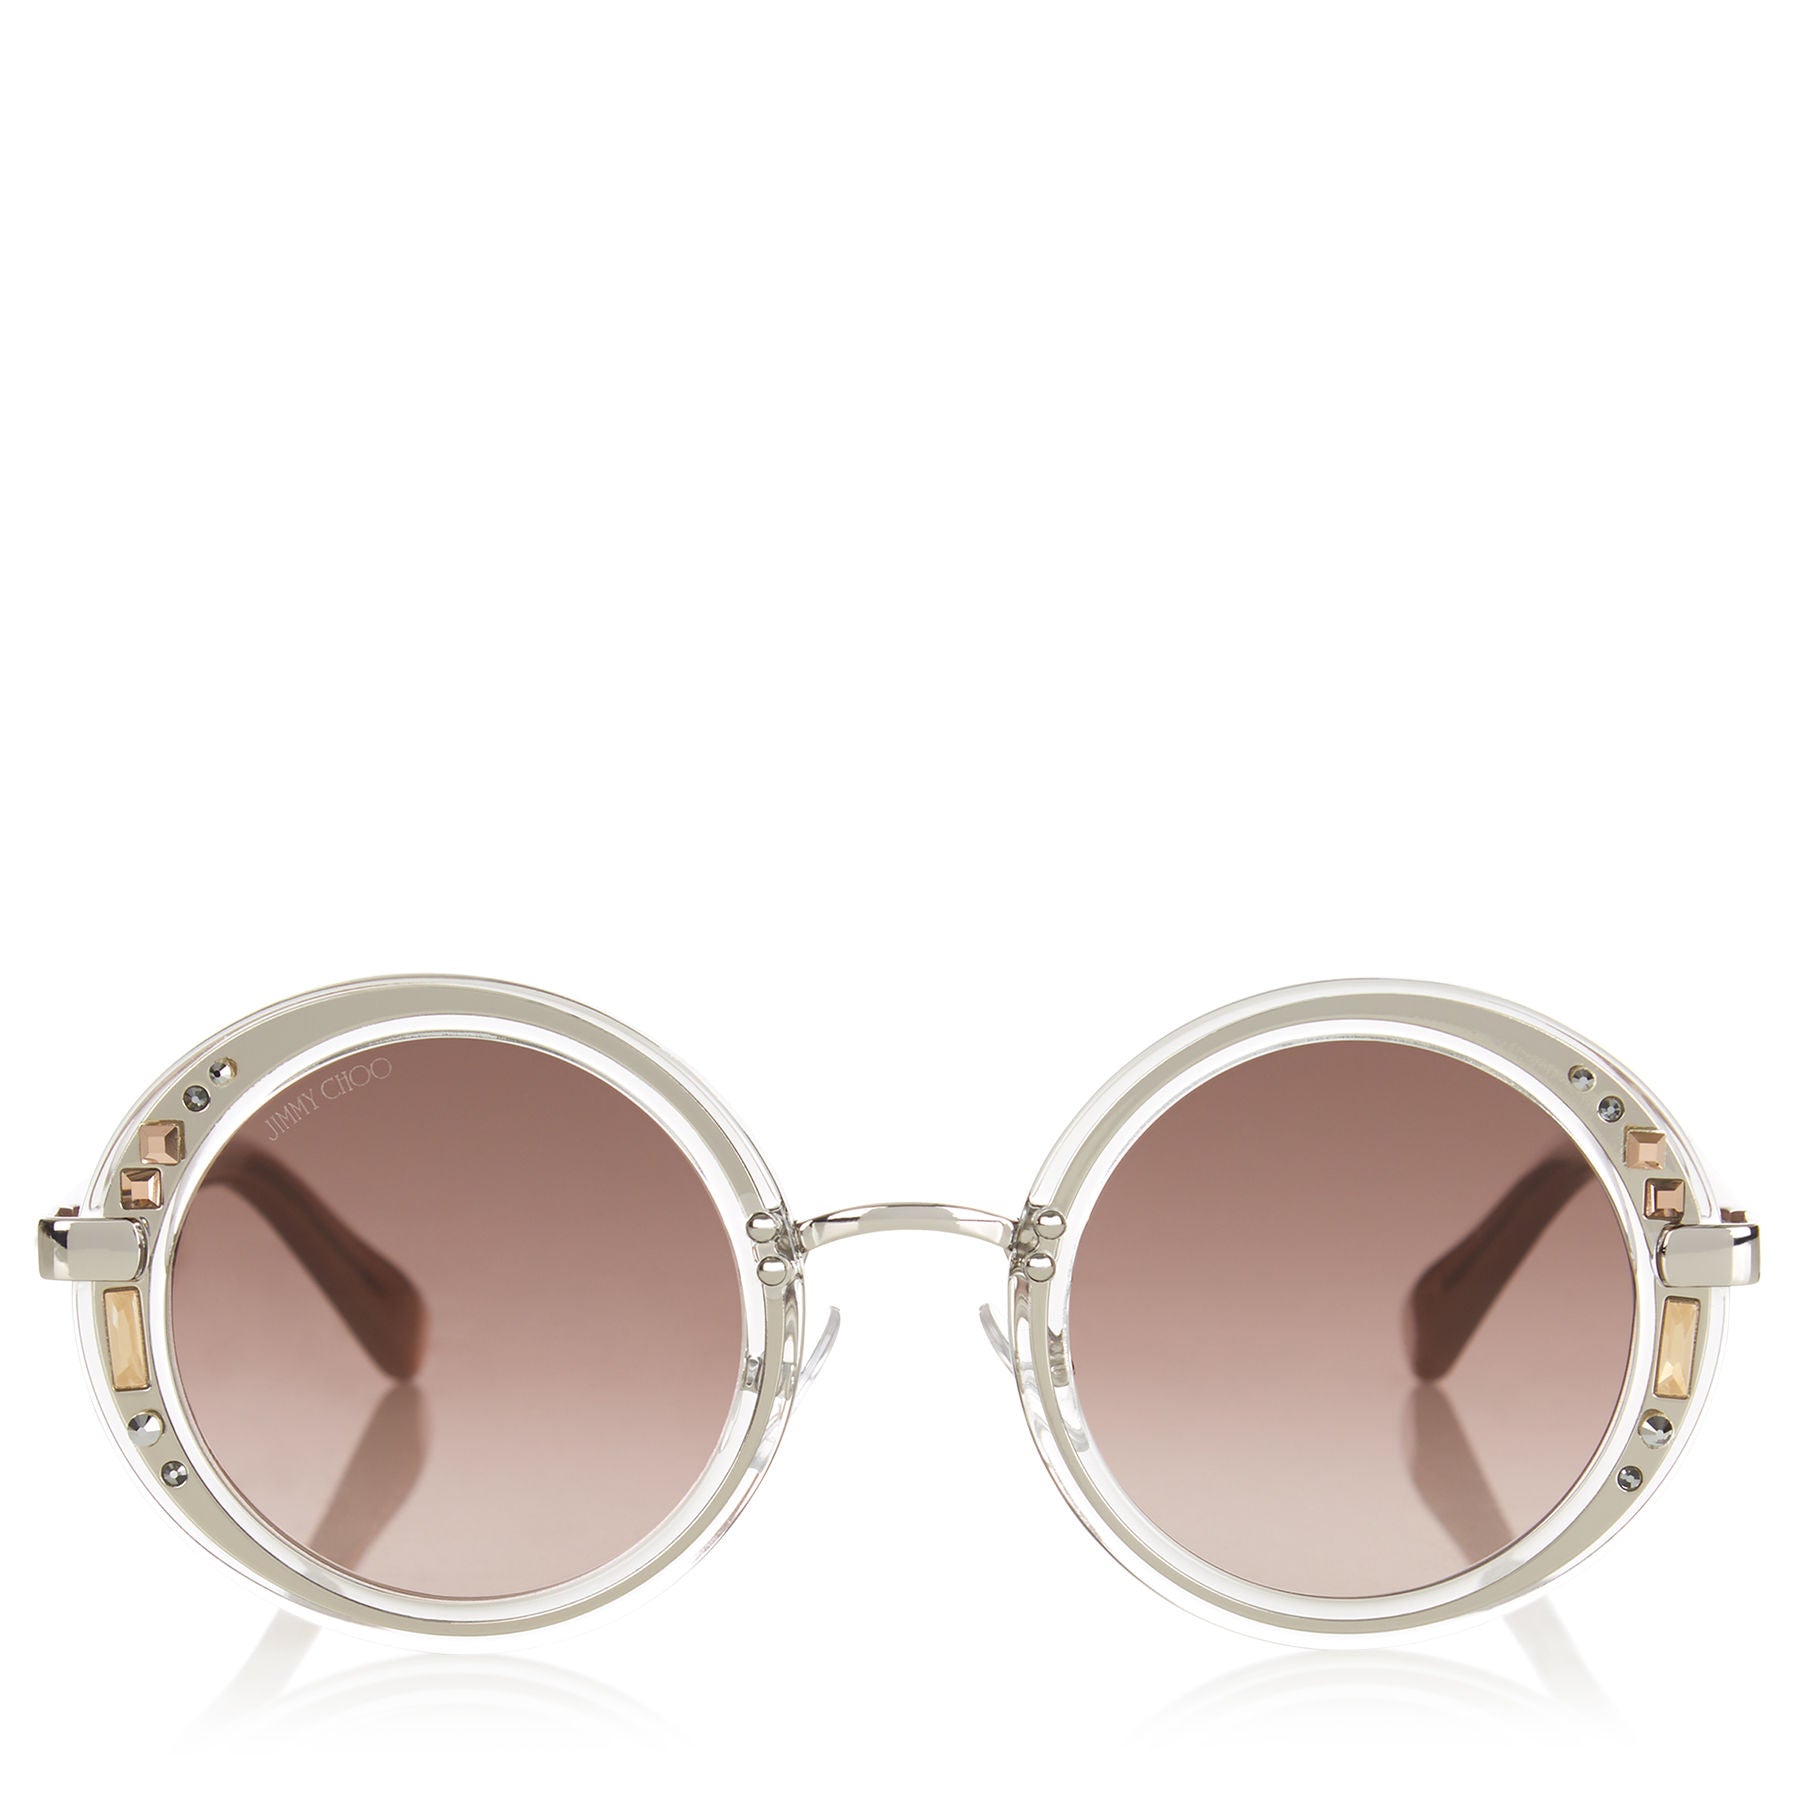 JIMMY CHOO Gem Transparent Round Framed Sunglasses with Swarovski Crystals ITEM NO. GEMS48E16R